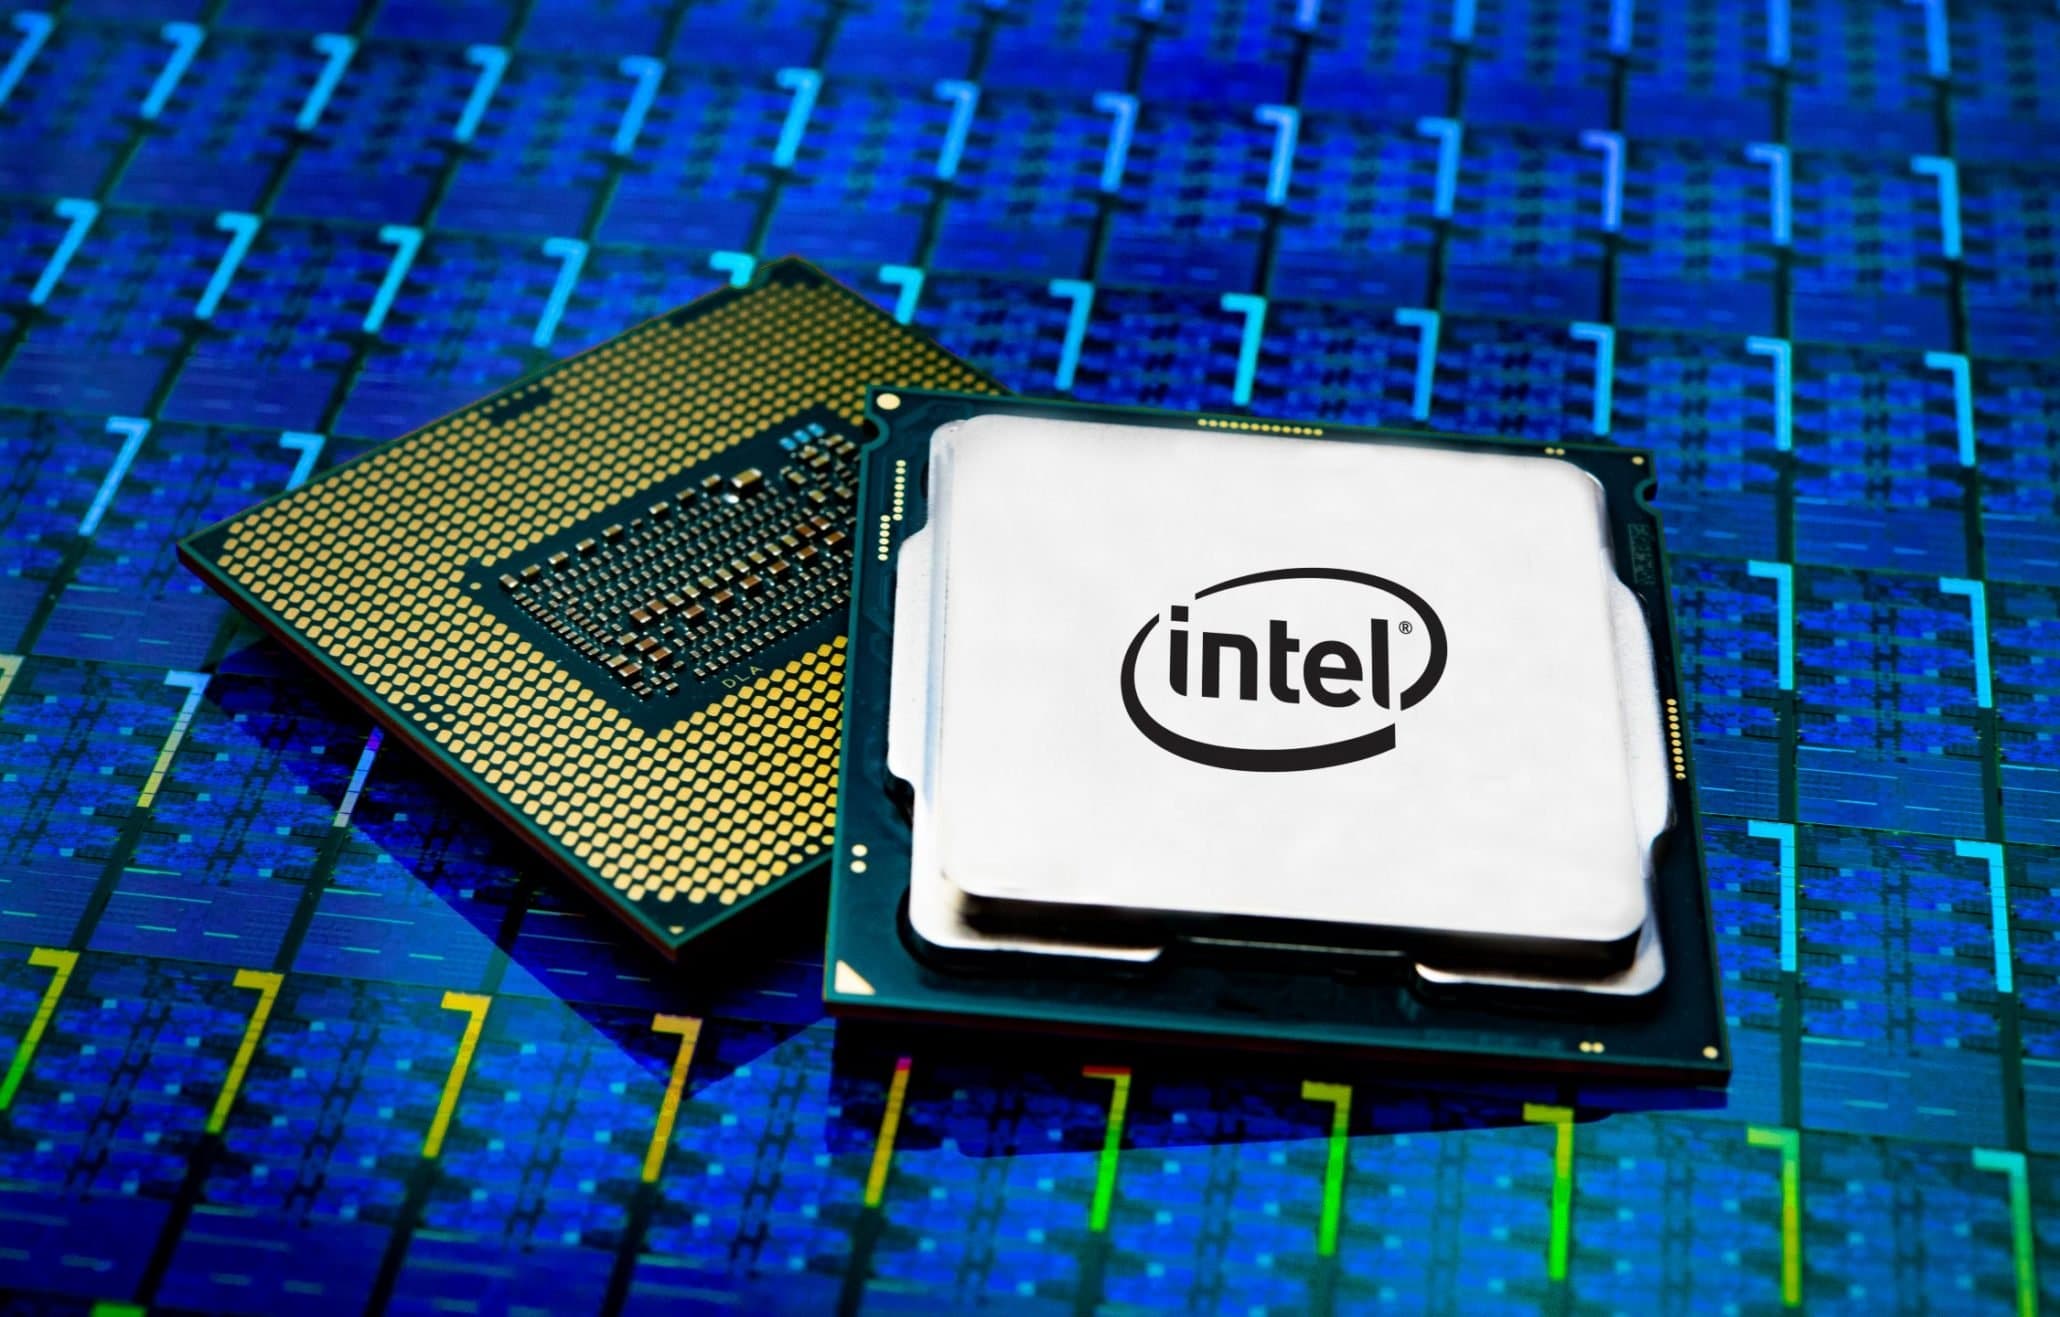 Inteli kiibi haavatavus mõjutab laua-, mobiili- ja serveriprotsessoreid